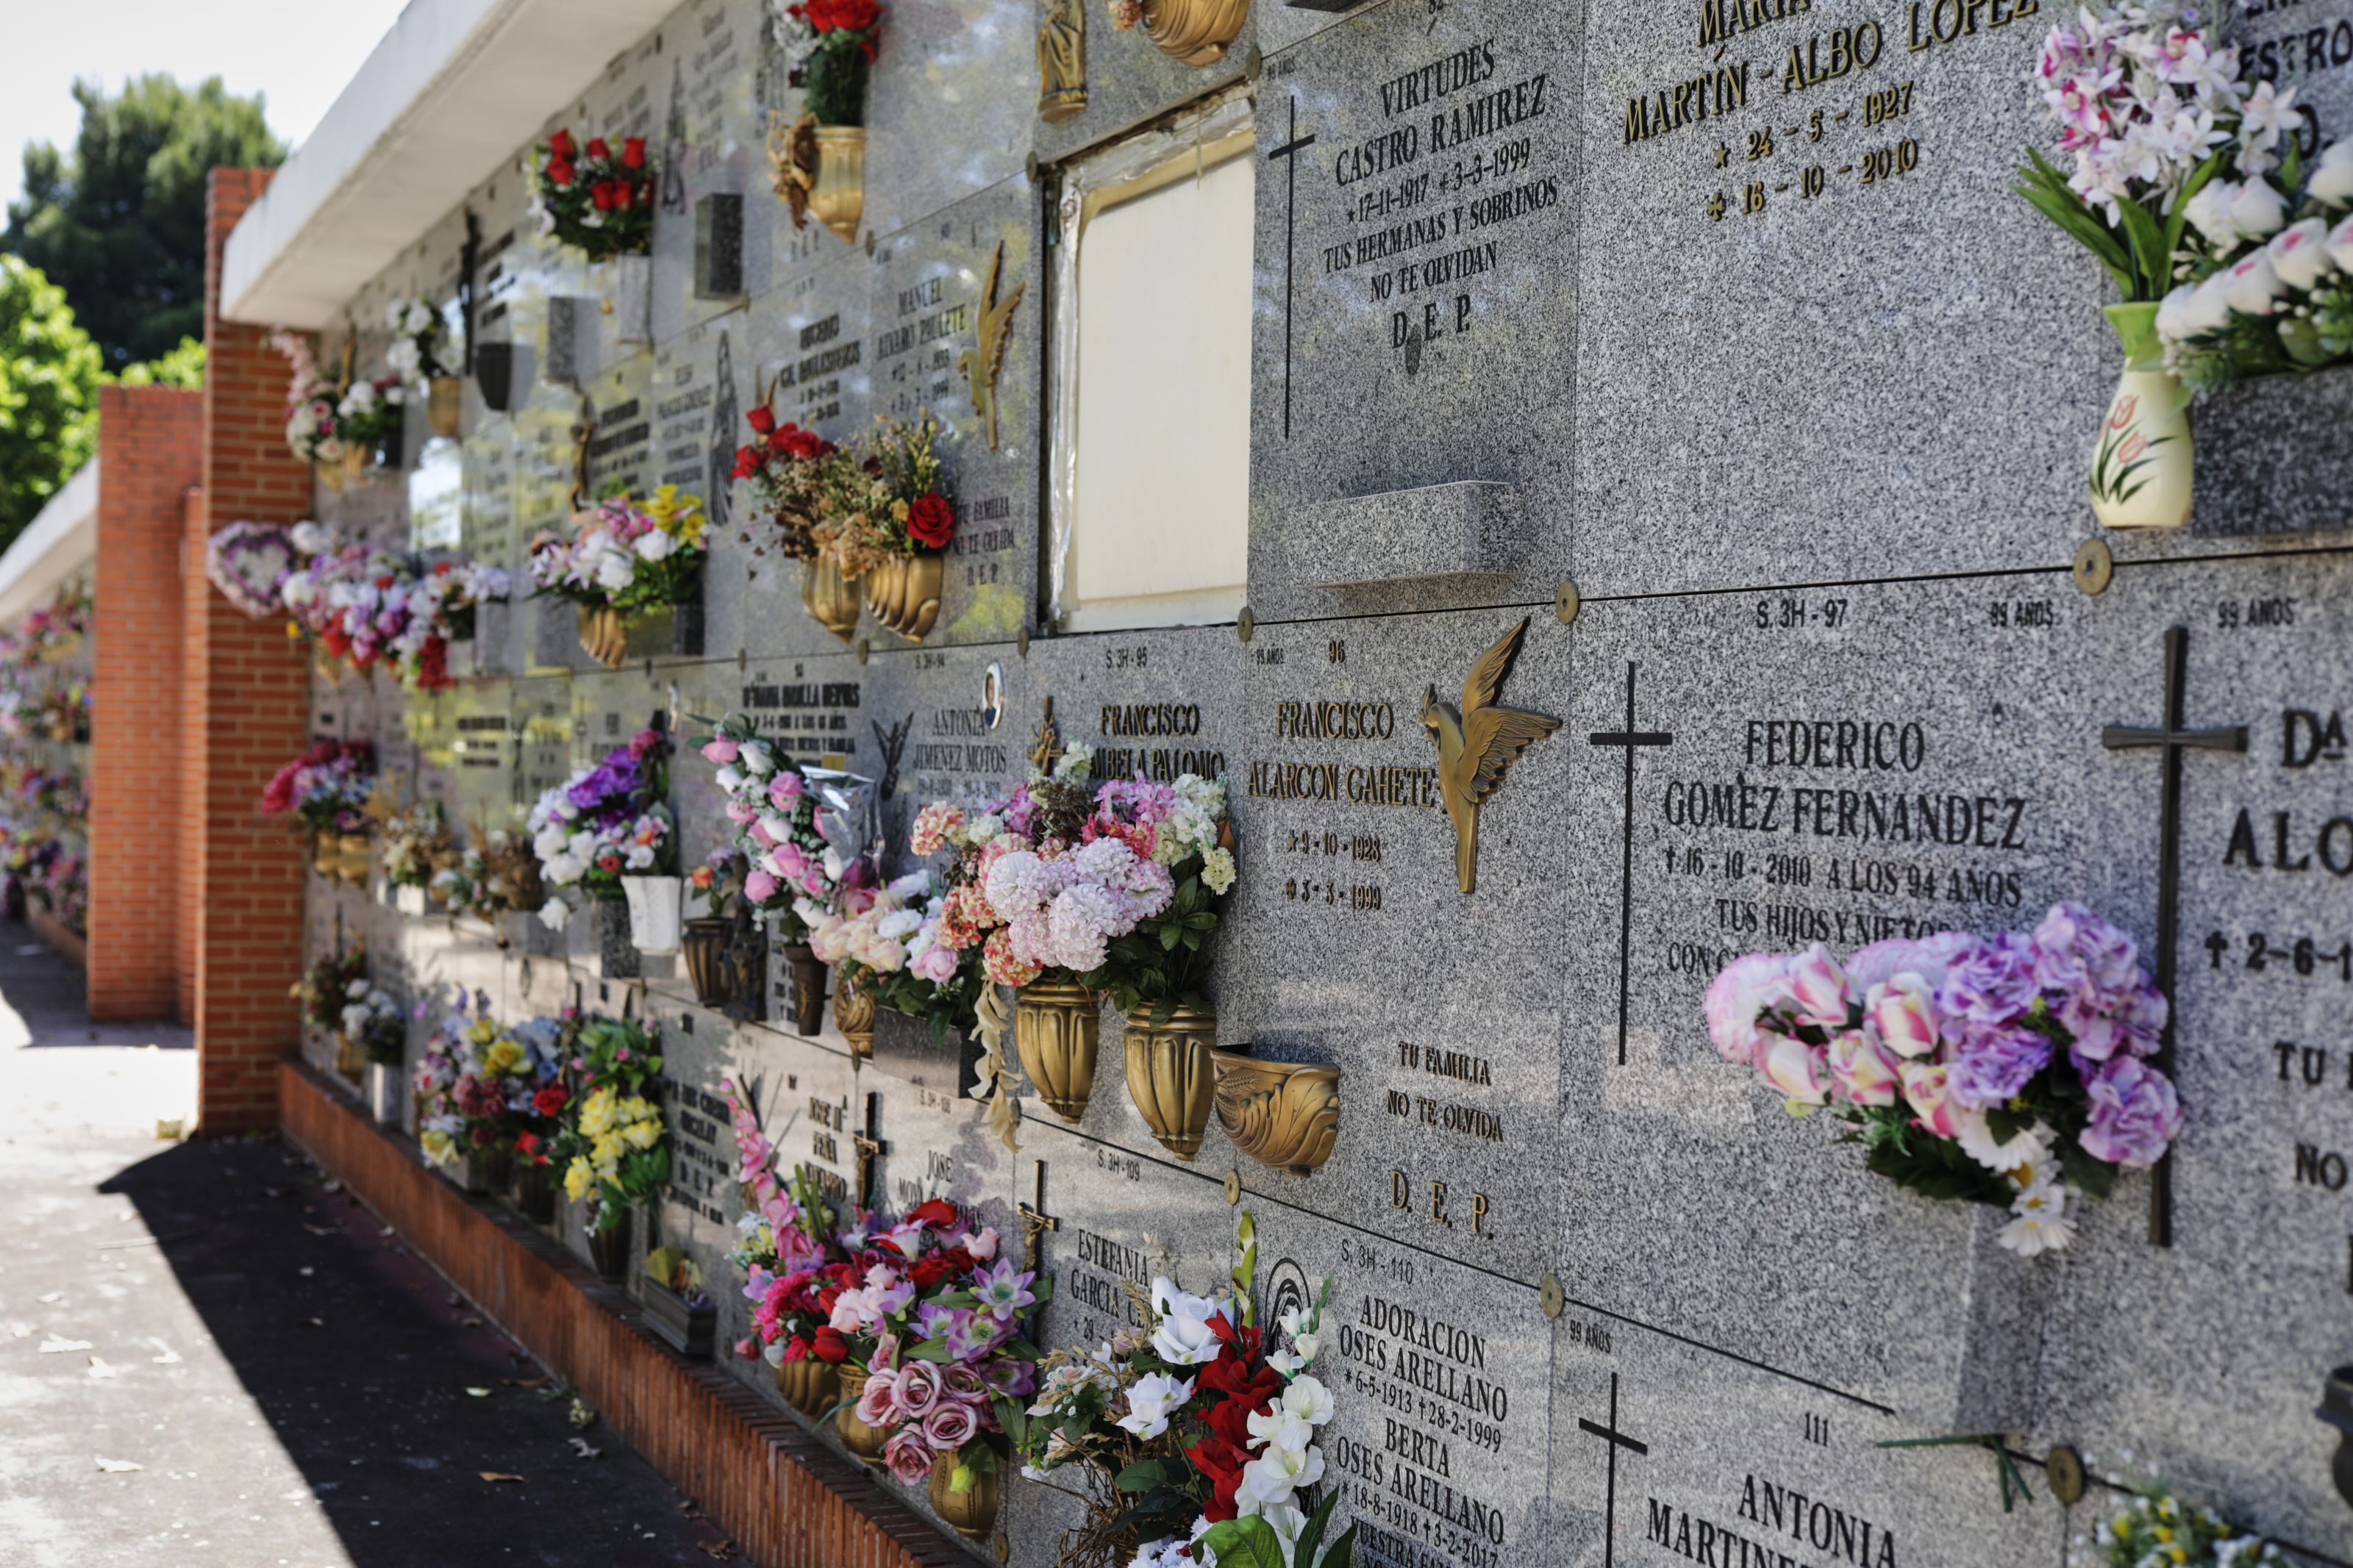 EuropaPress 3134156 nichos cementerio sur carabanchel madrid hoy permiten velatorios 15